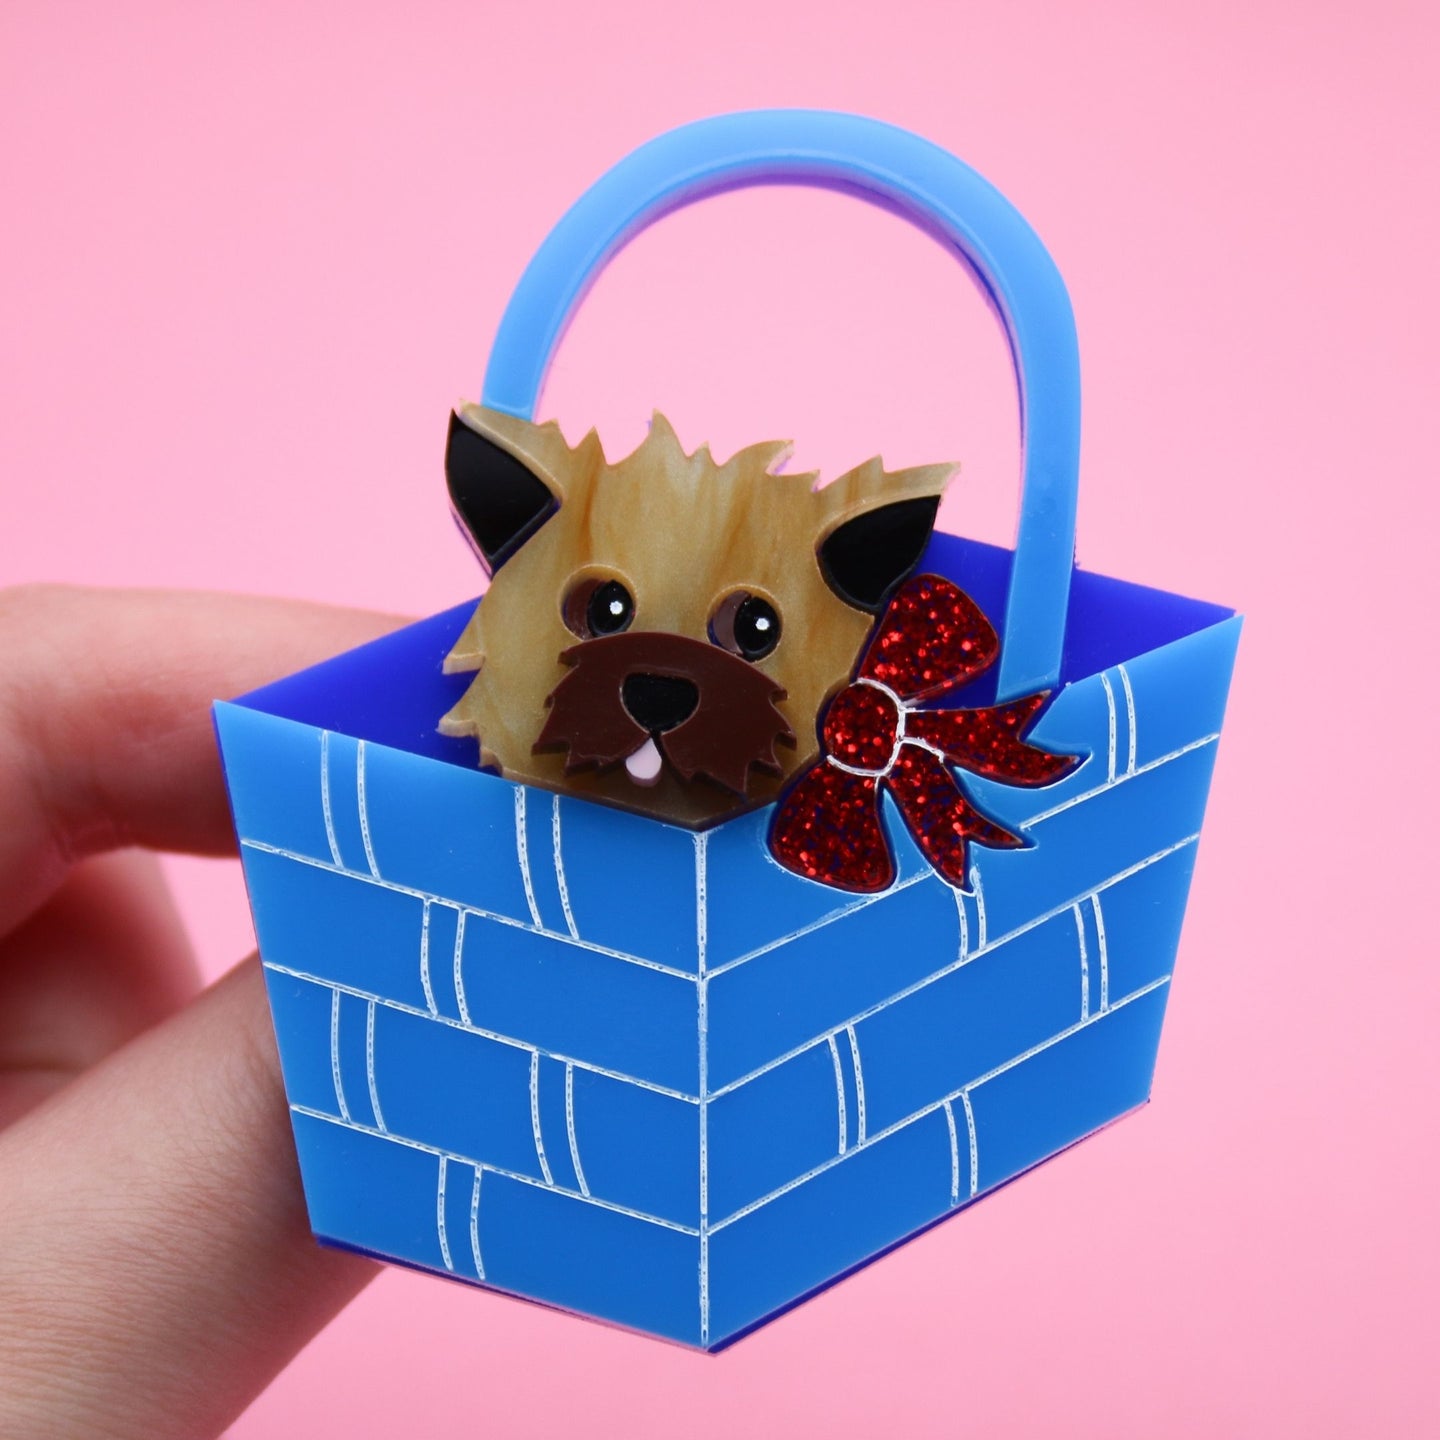 Dolly Dimple Design Dog In Basket Brooch - Brown